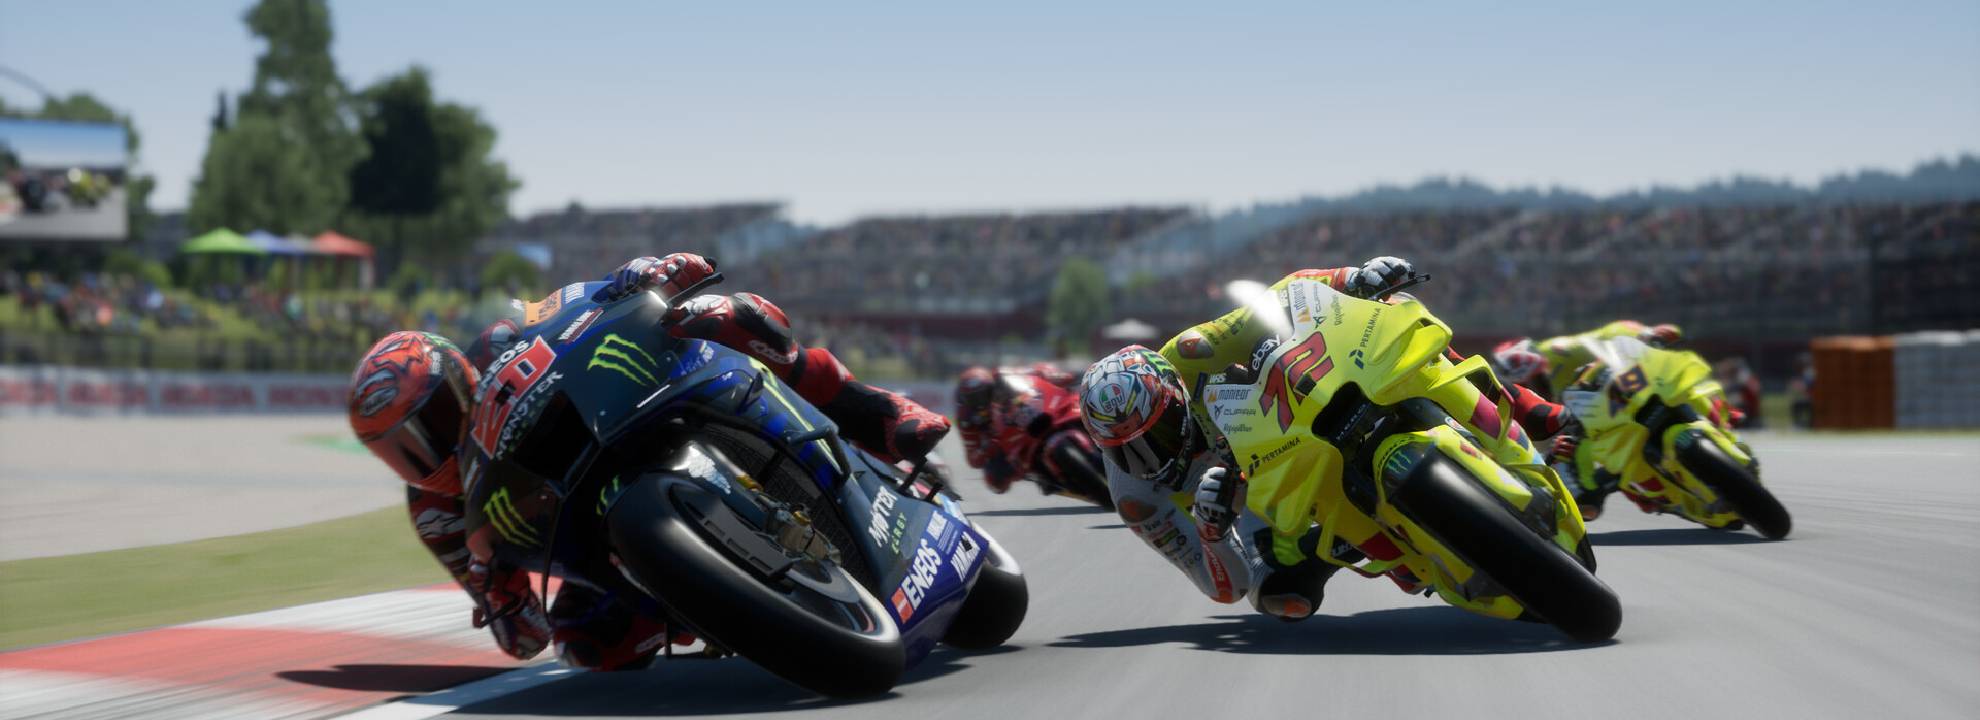 بازی MotoGP 24 برای PS5